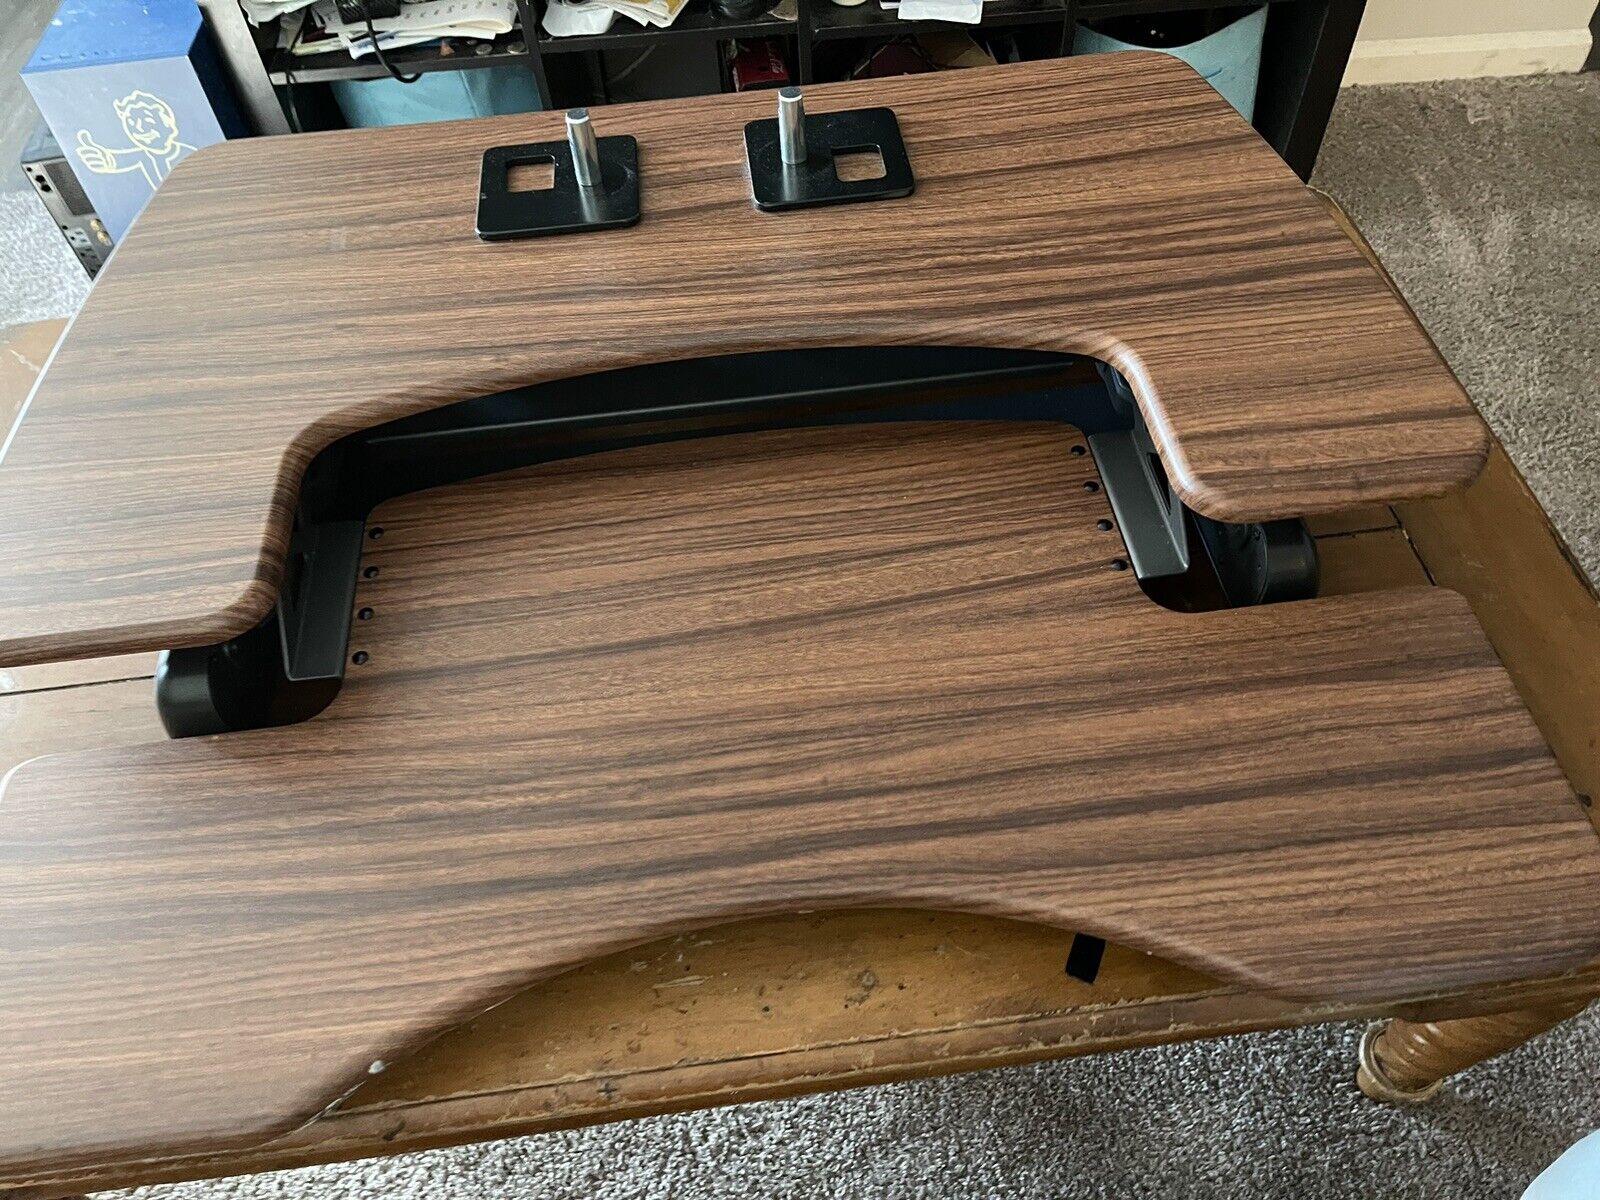 Varidesk Pro Plus 36 Adjustable Standing Desk Riser Converter, Wood Grain Finish